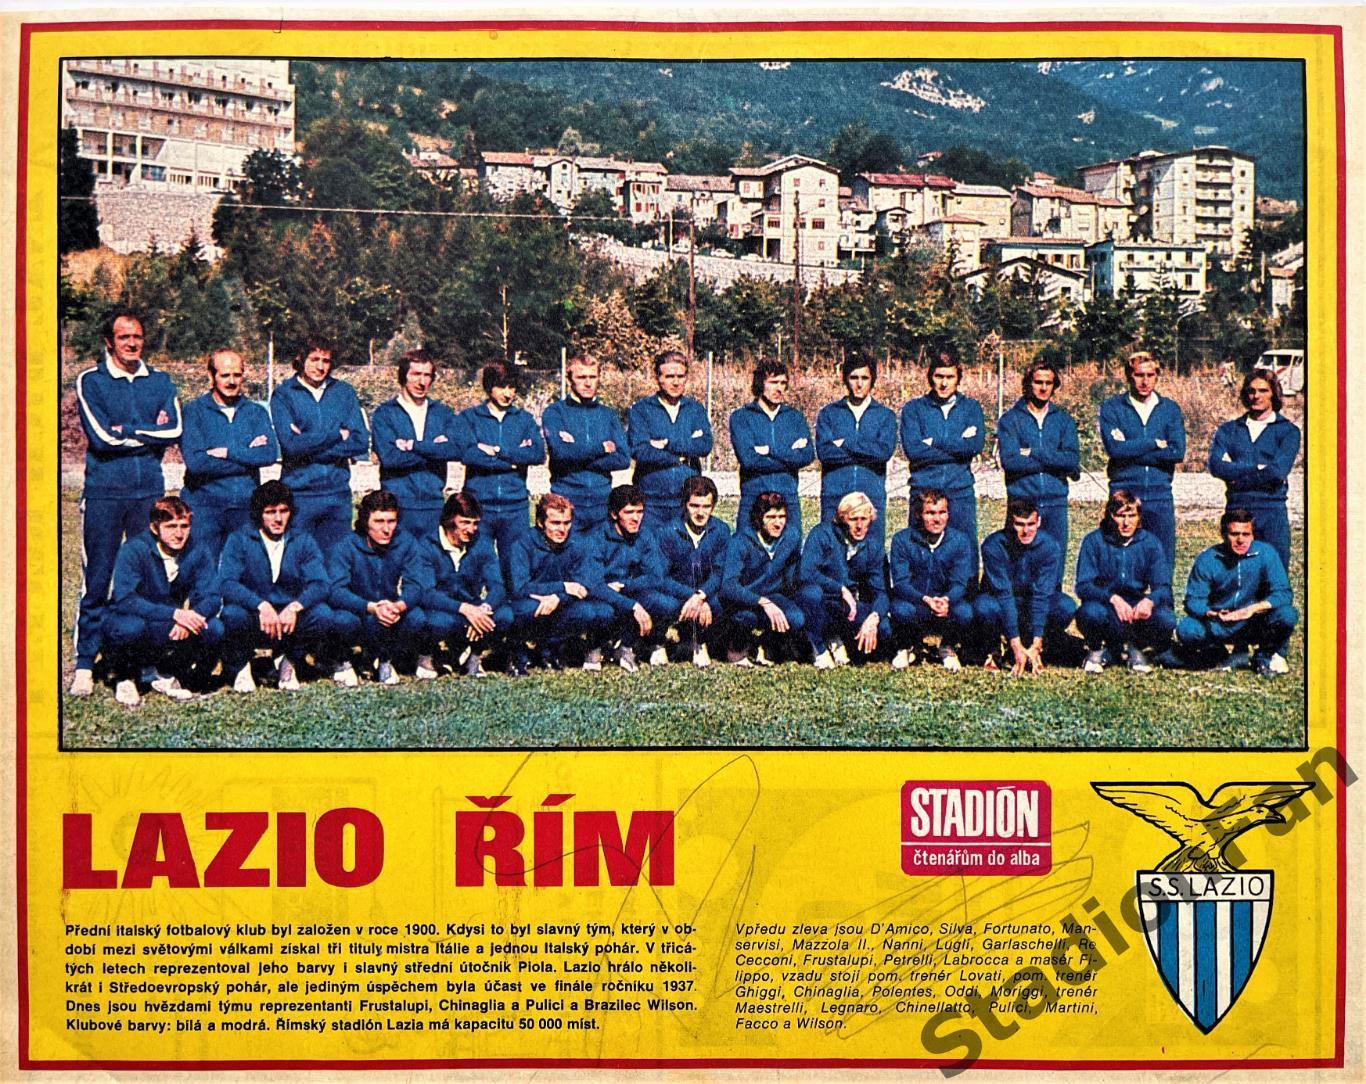 Постер из журнала Стадион (Stadion) - Lazio, 1973.